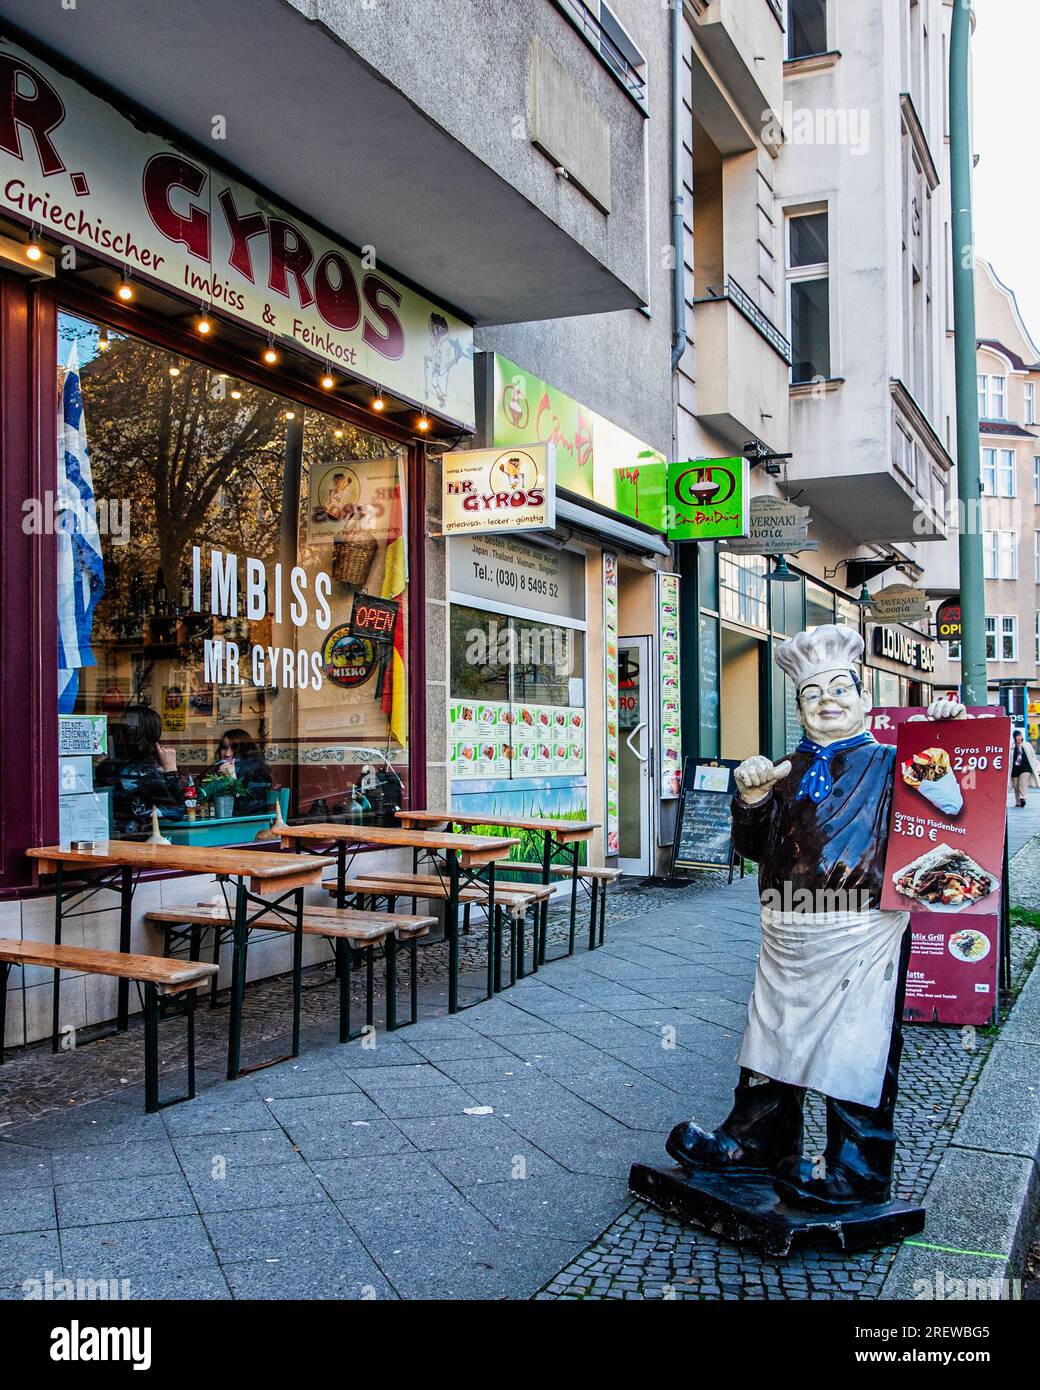 Chefkoch Mannequin vor dem griechischen Restaurant Gyros, Grunewaldstraße, Schöneberg, Berlin Stockfoto